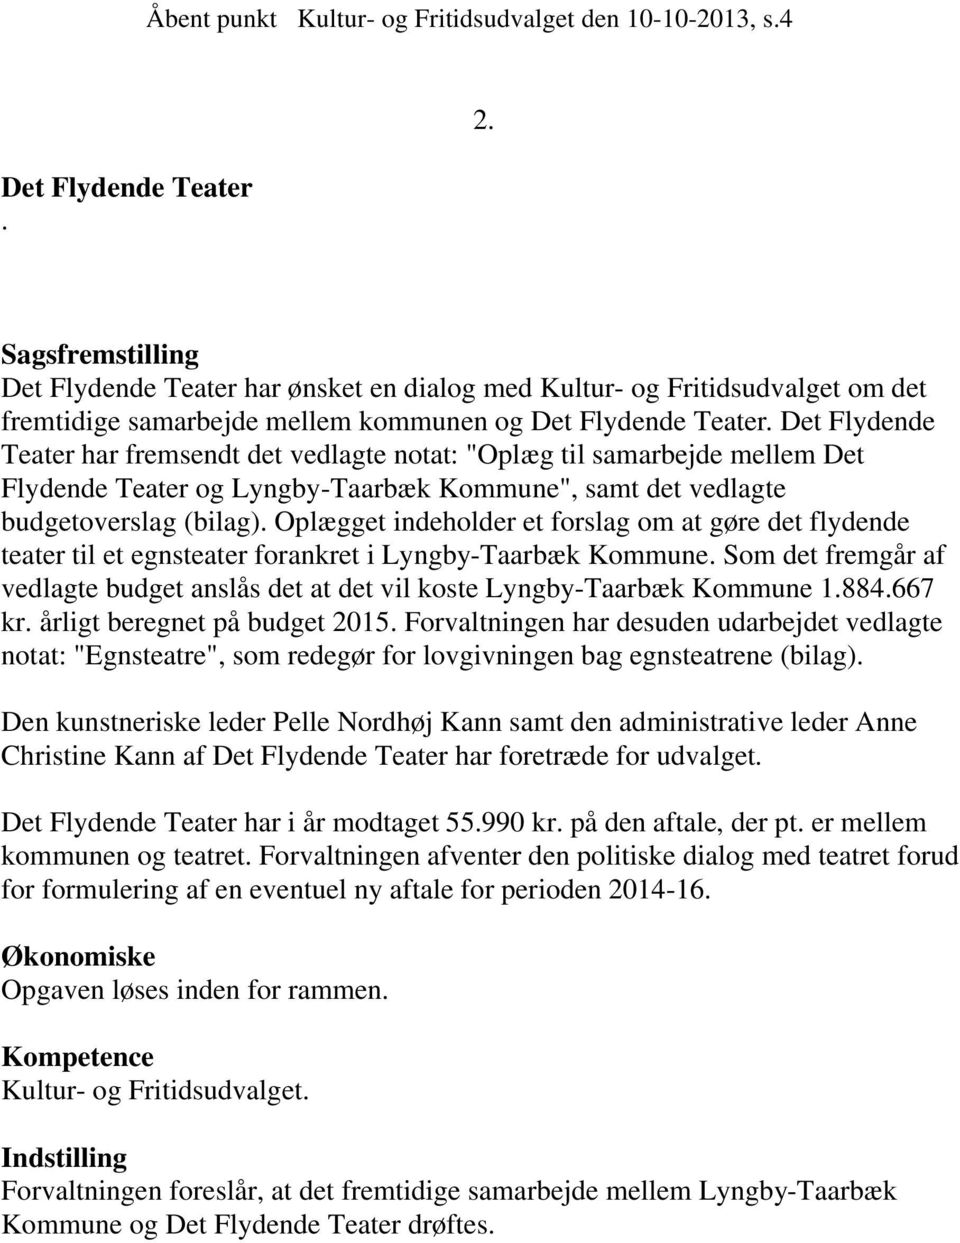 Det Flydende Teater har fremsendt det vedlagte notat: "Oplæg til samarbejde mellem Det Flydende Teater og Lyngby-Taarbæk Kommune", samt det vedlagte budgetoverslag (bilag).